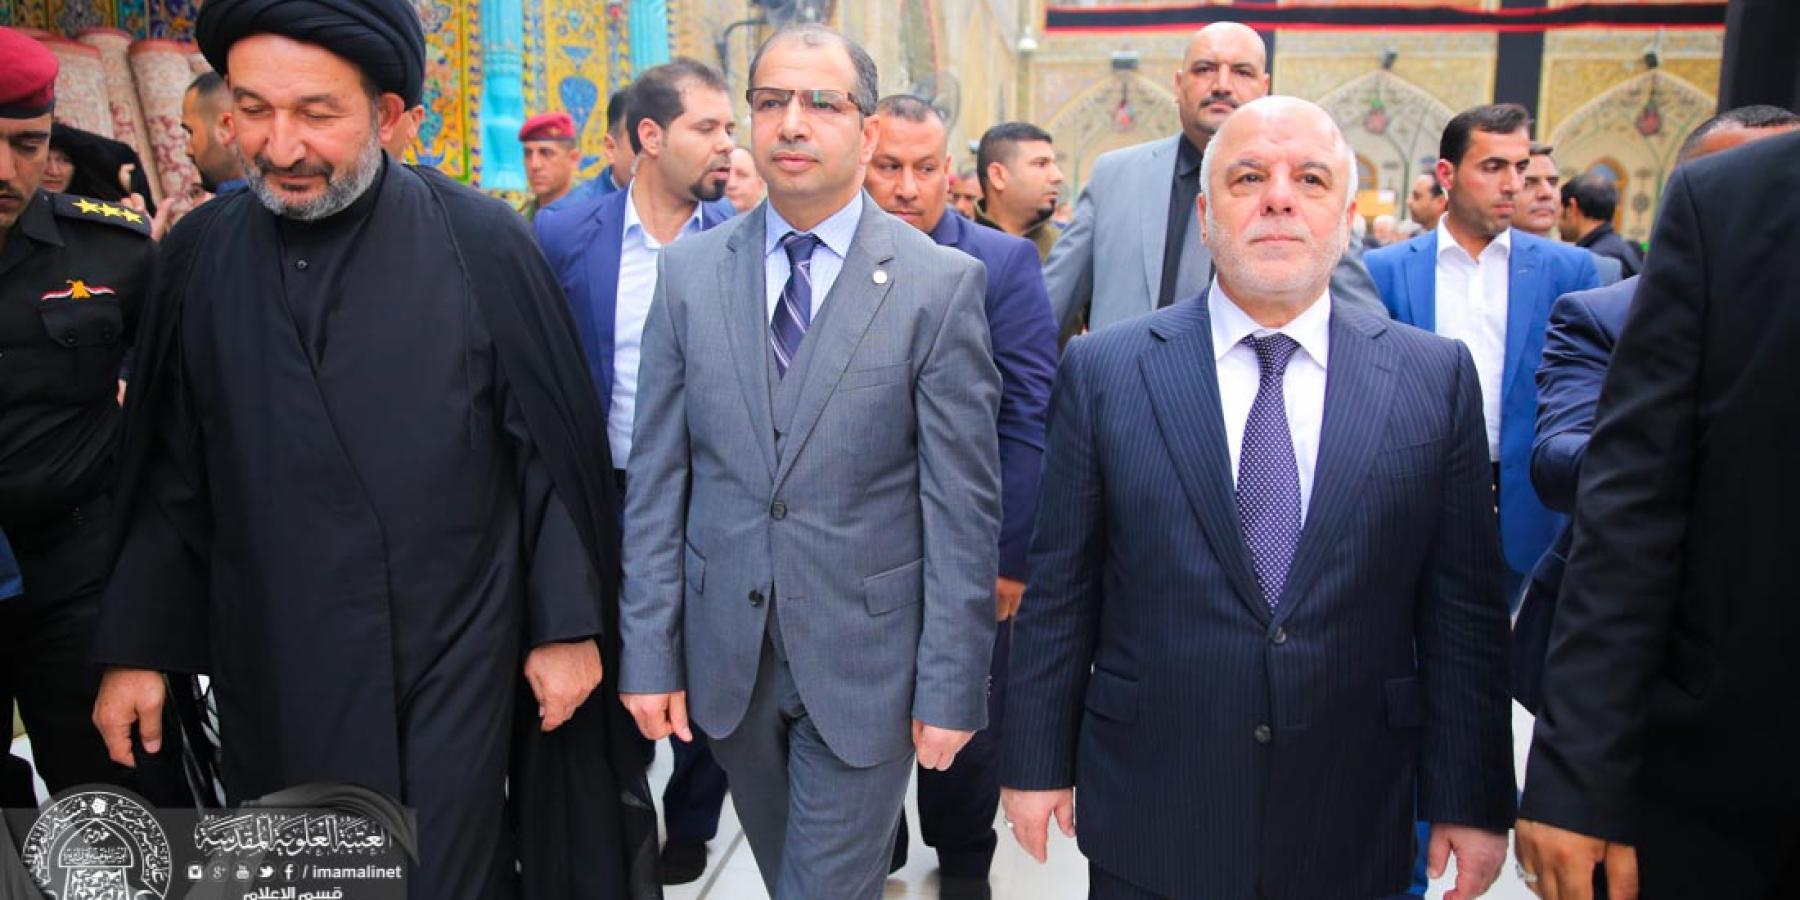 رئيسا مجلس الوزراء والنواب العراقيين يتشرفان بزيارة العتبة العلوية المقدسة 